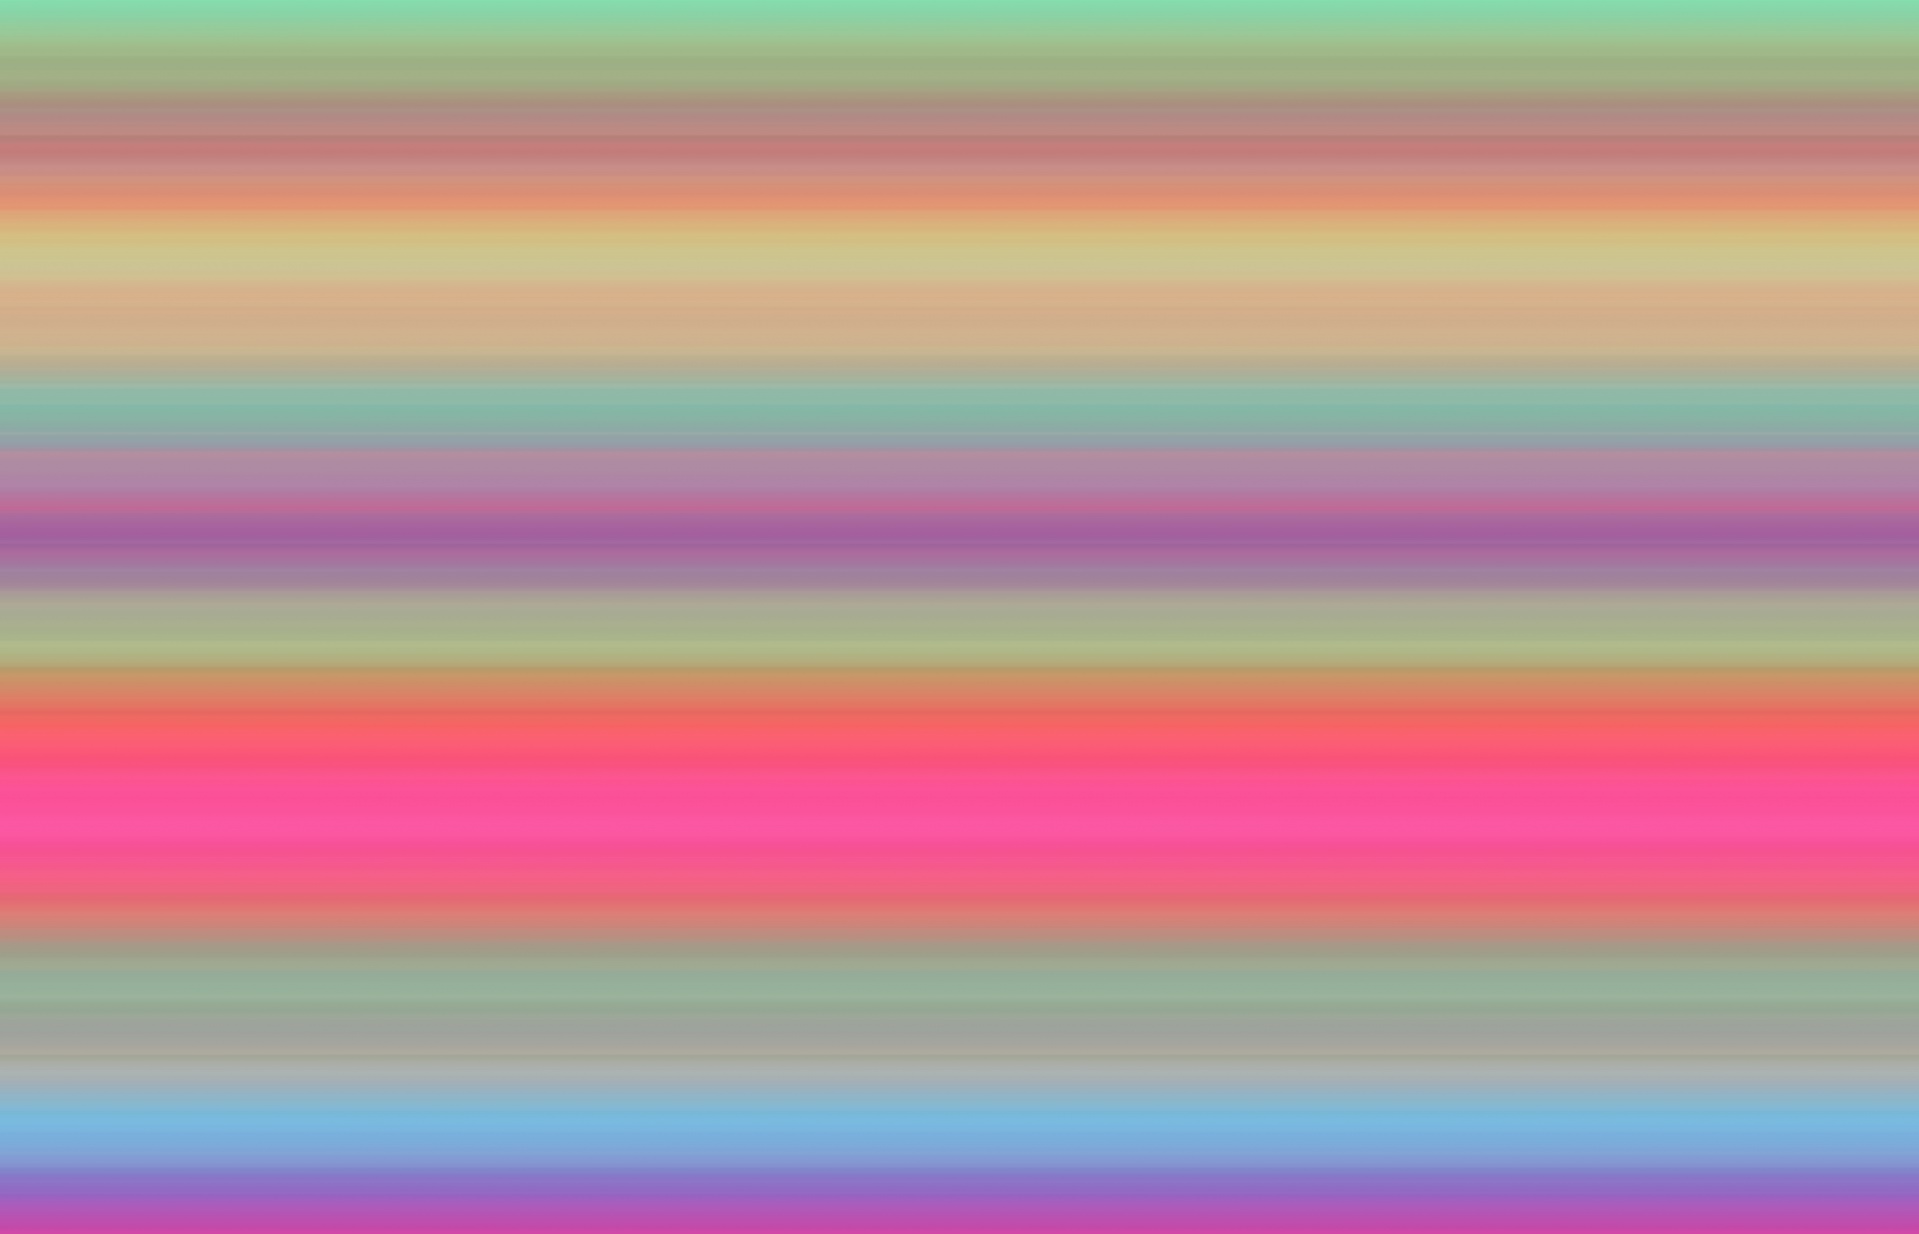 Stripes Mistura Gradiente colorido